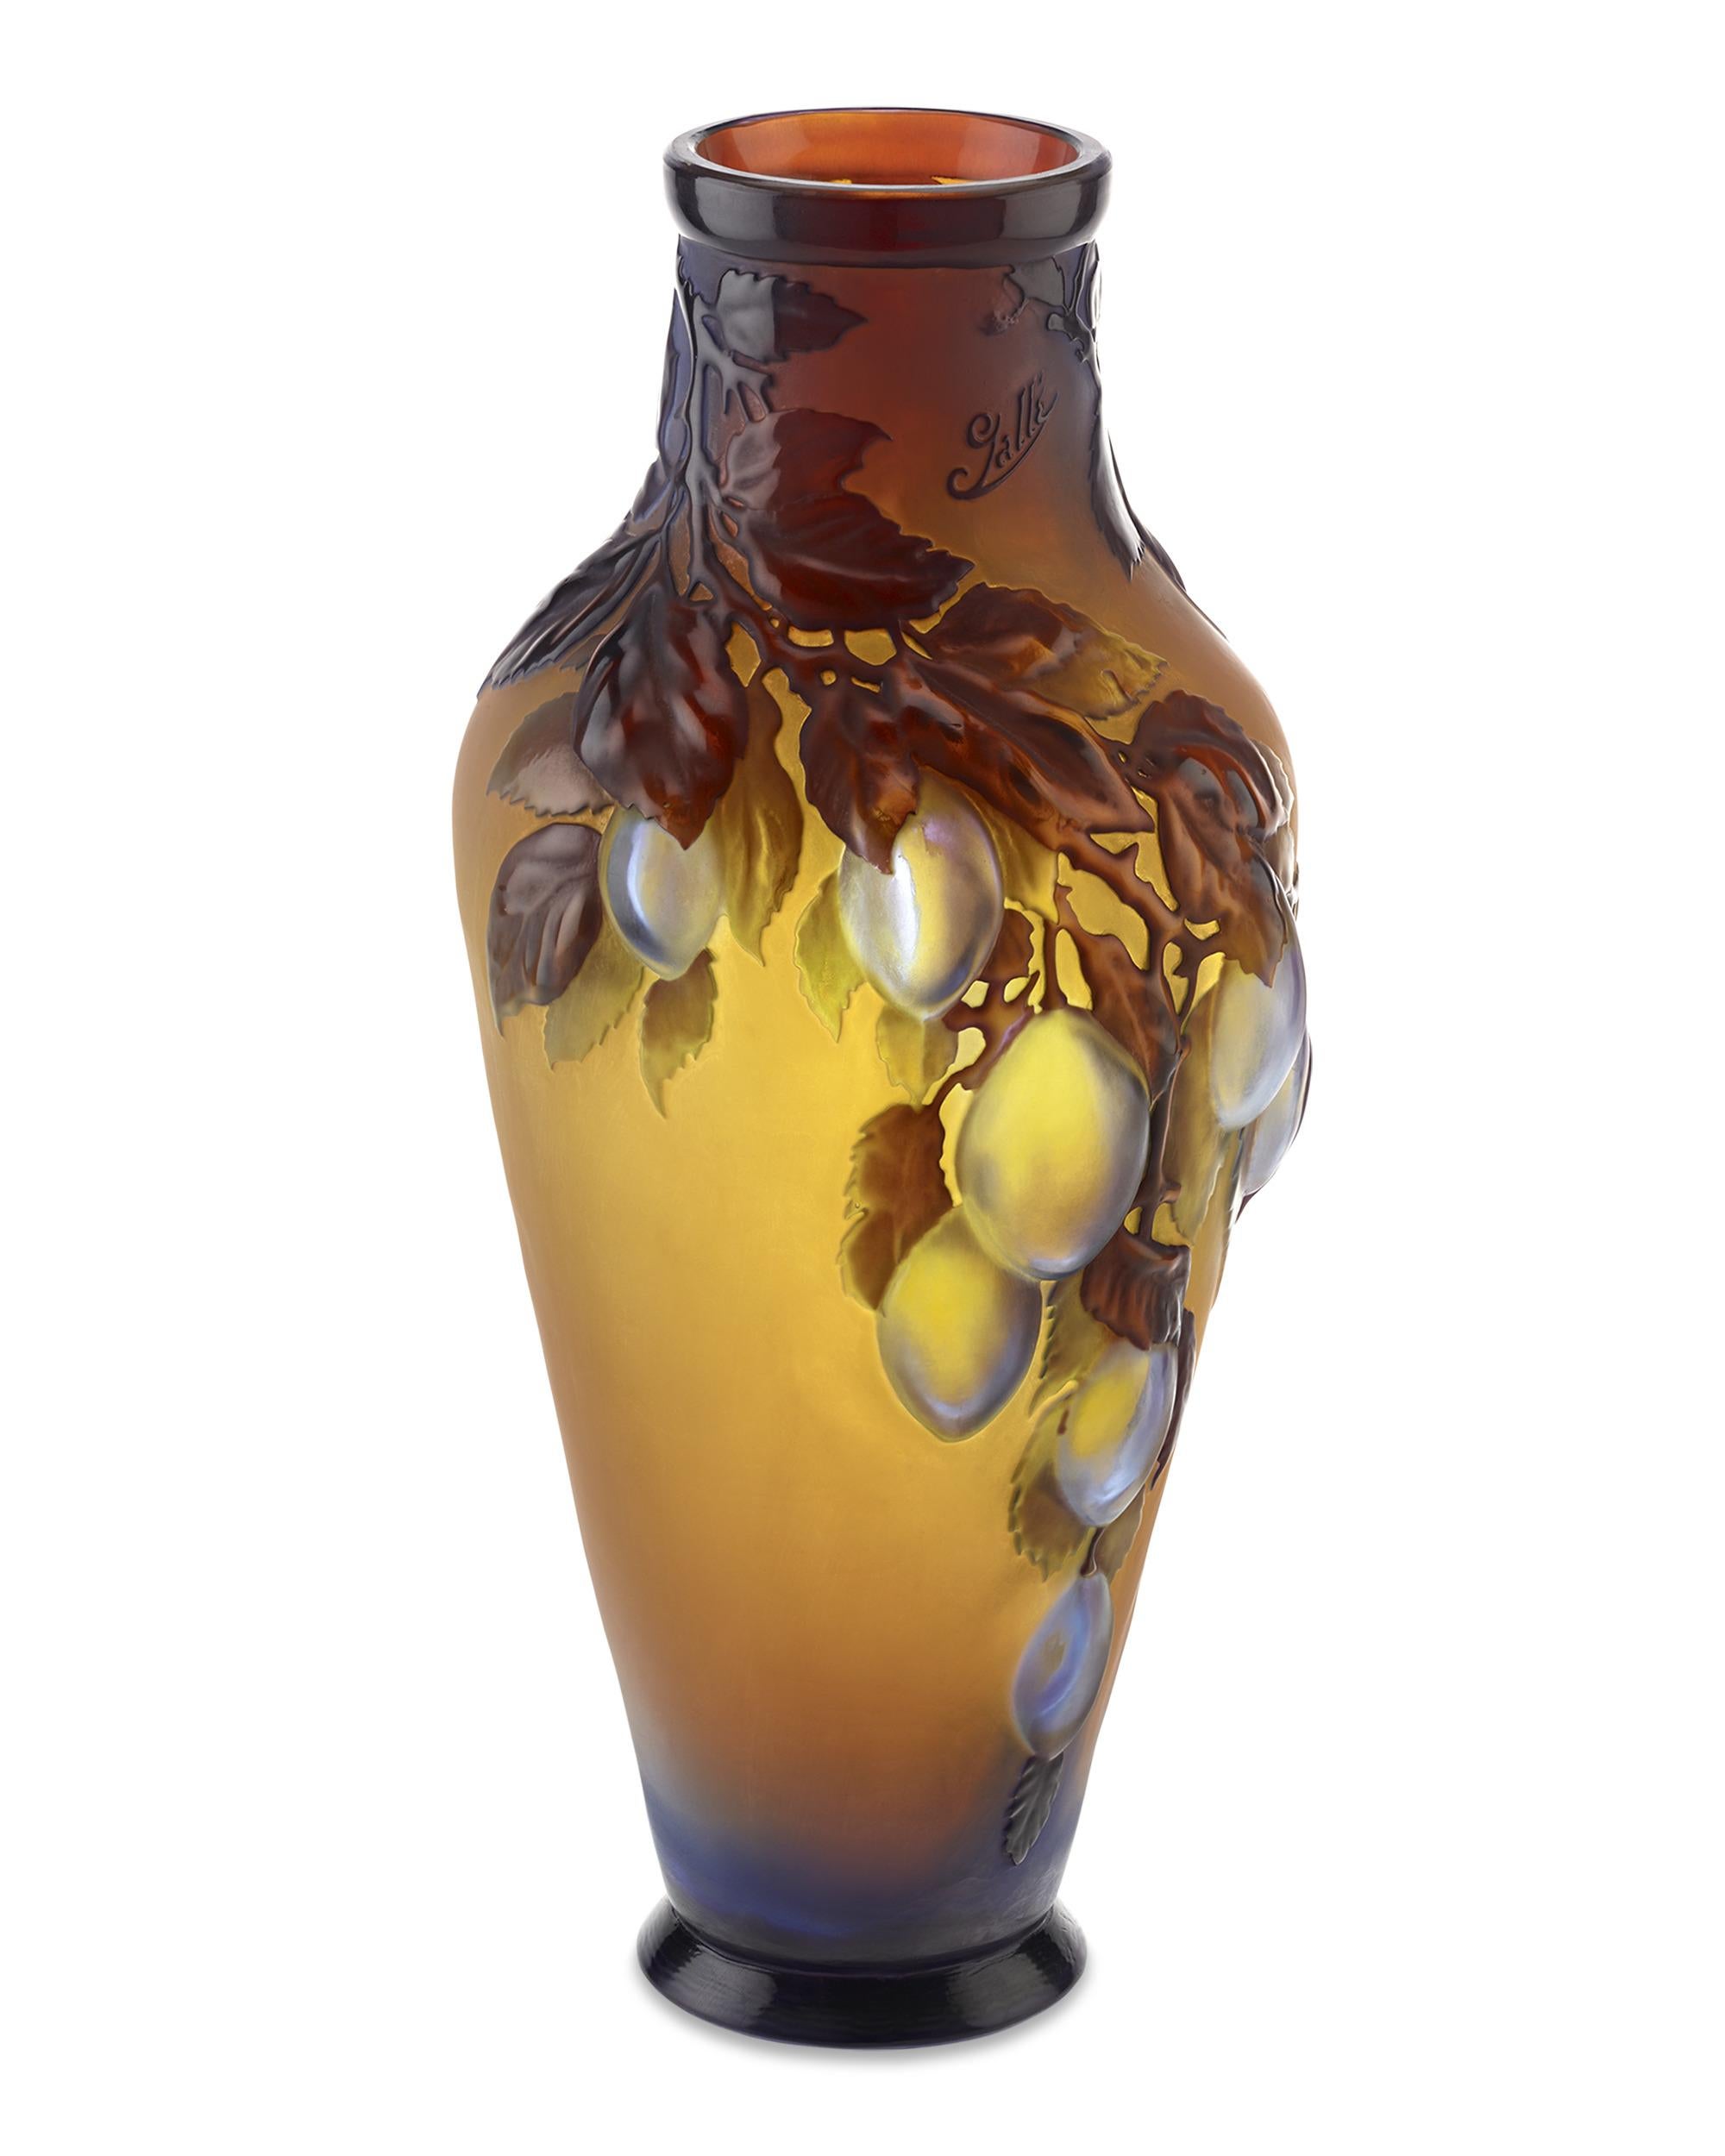 Ce rare vase en verre camée du verrier français Émile Gallé présente un exceptionnel motif de prunier fruitier soufflé au moule. Si la majorité des vases Gallé ont été soufflés dans des moules avant d'être sculptés ou émaillés, seuls quelques rares